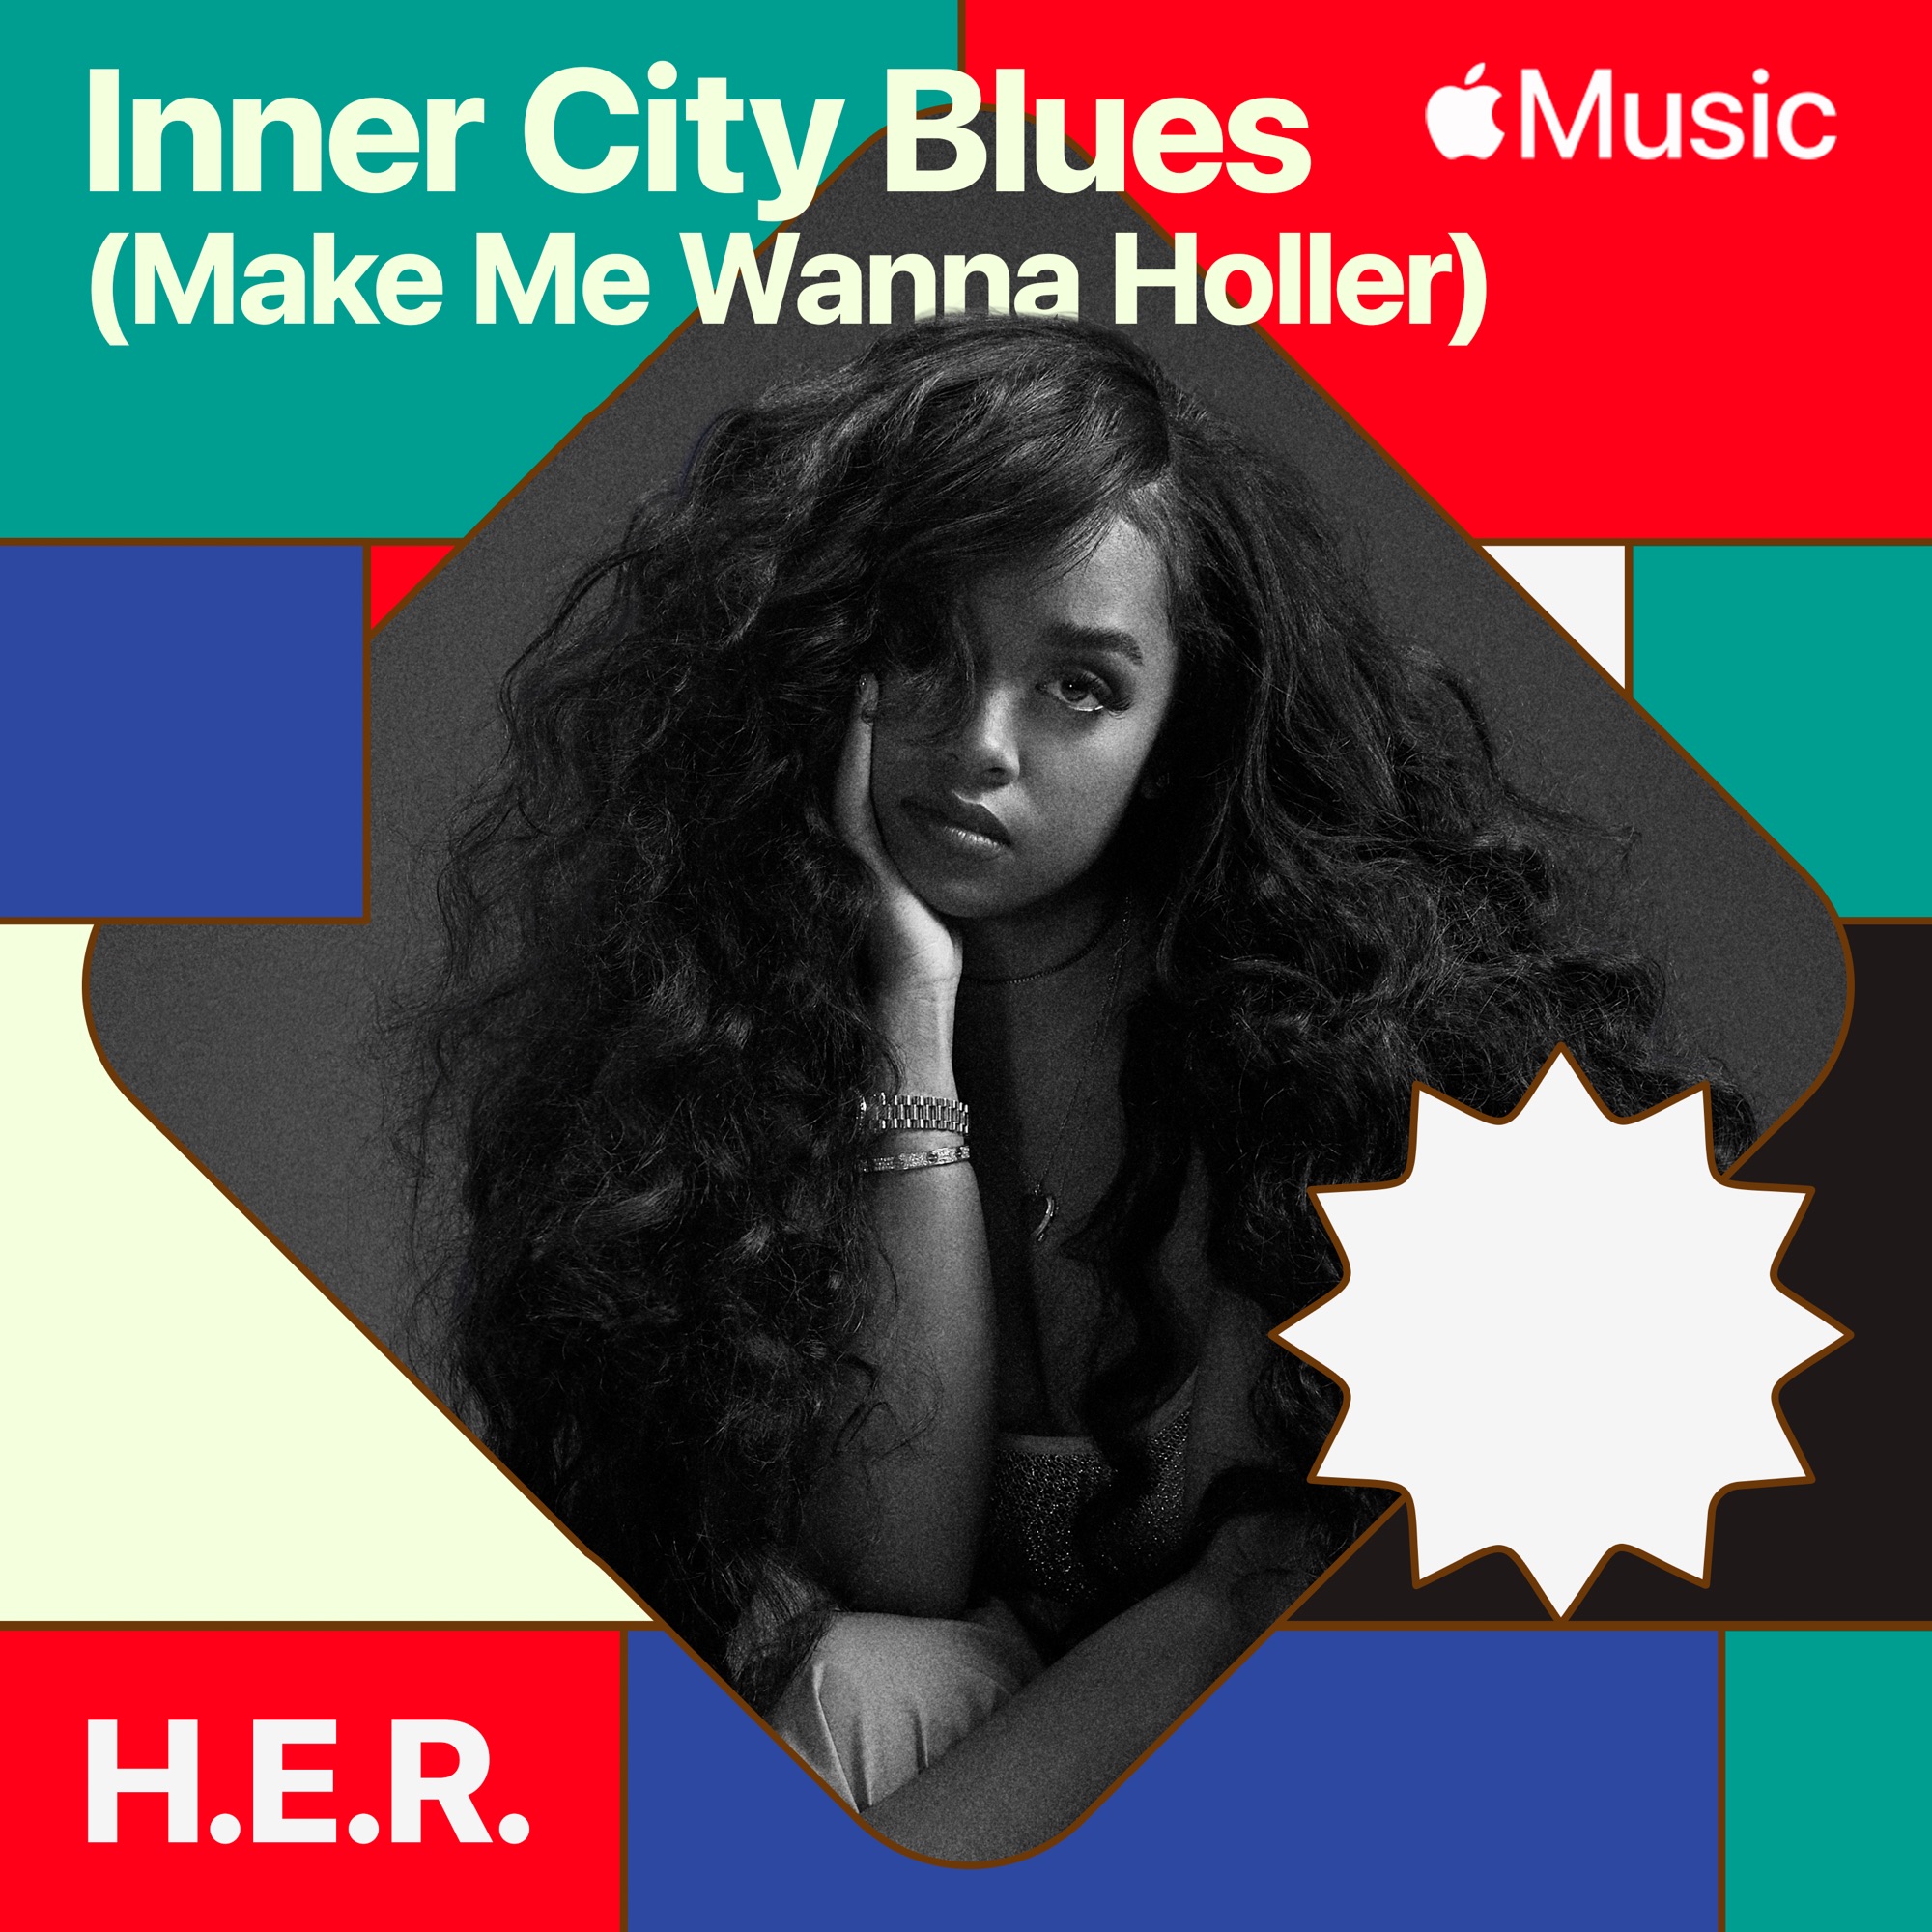 H.E.R. - Inner City Blues (Make Me Wanna Holler) - Single